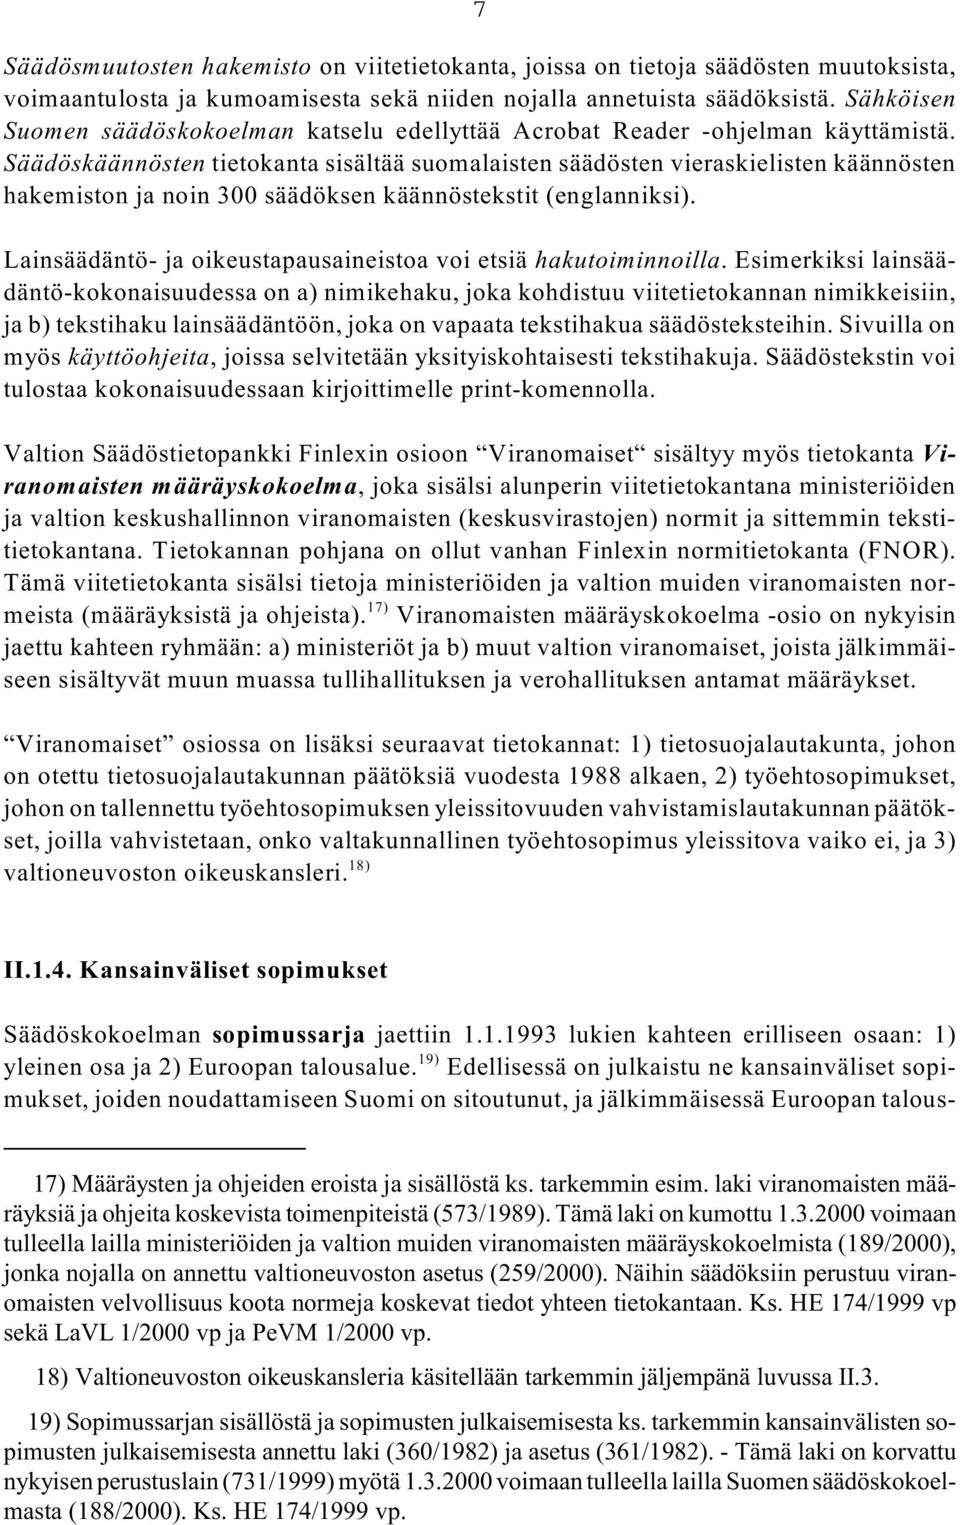 Säädöskäännösten tietokanta sisältää suomalaisten säädösten vieraskielisten käännösten hakemiston ja noin 300 säädöksen käännöstekstit (englanniksi).